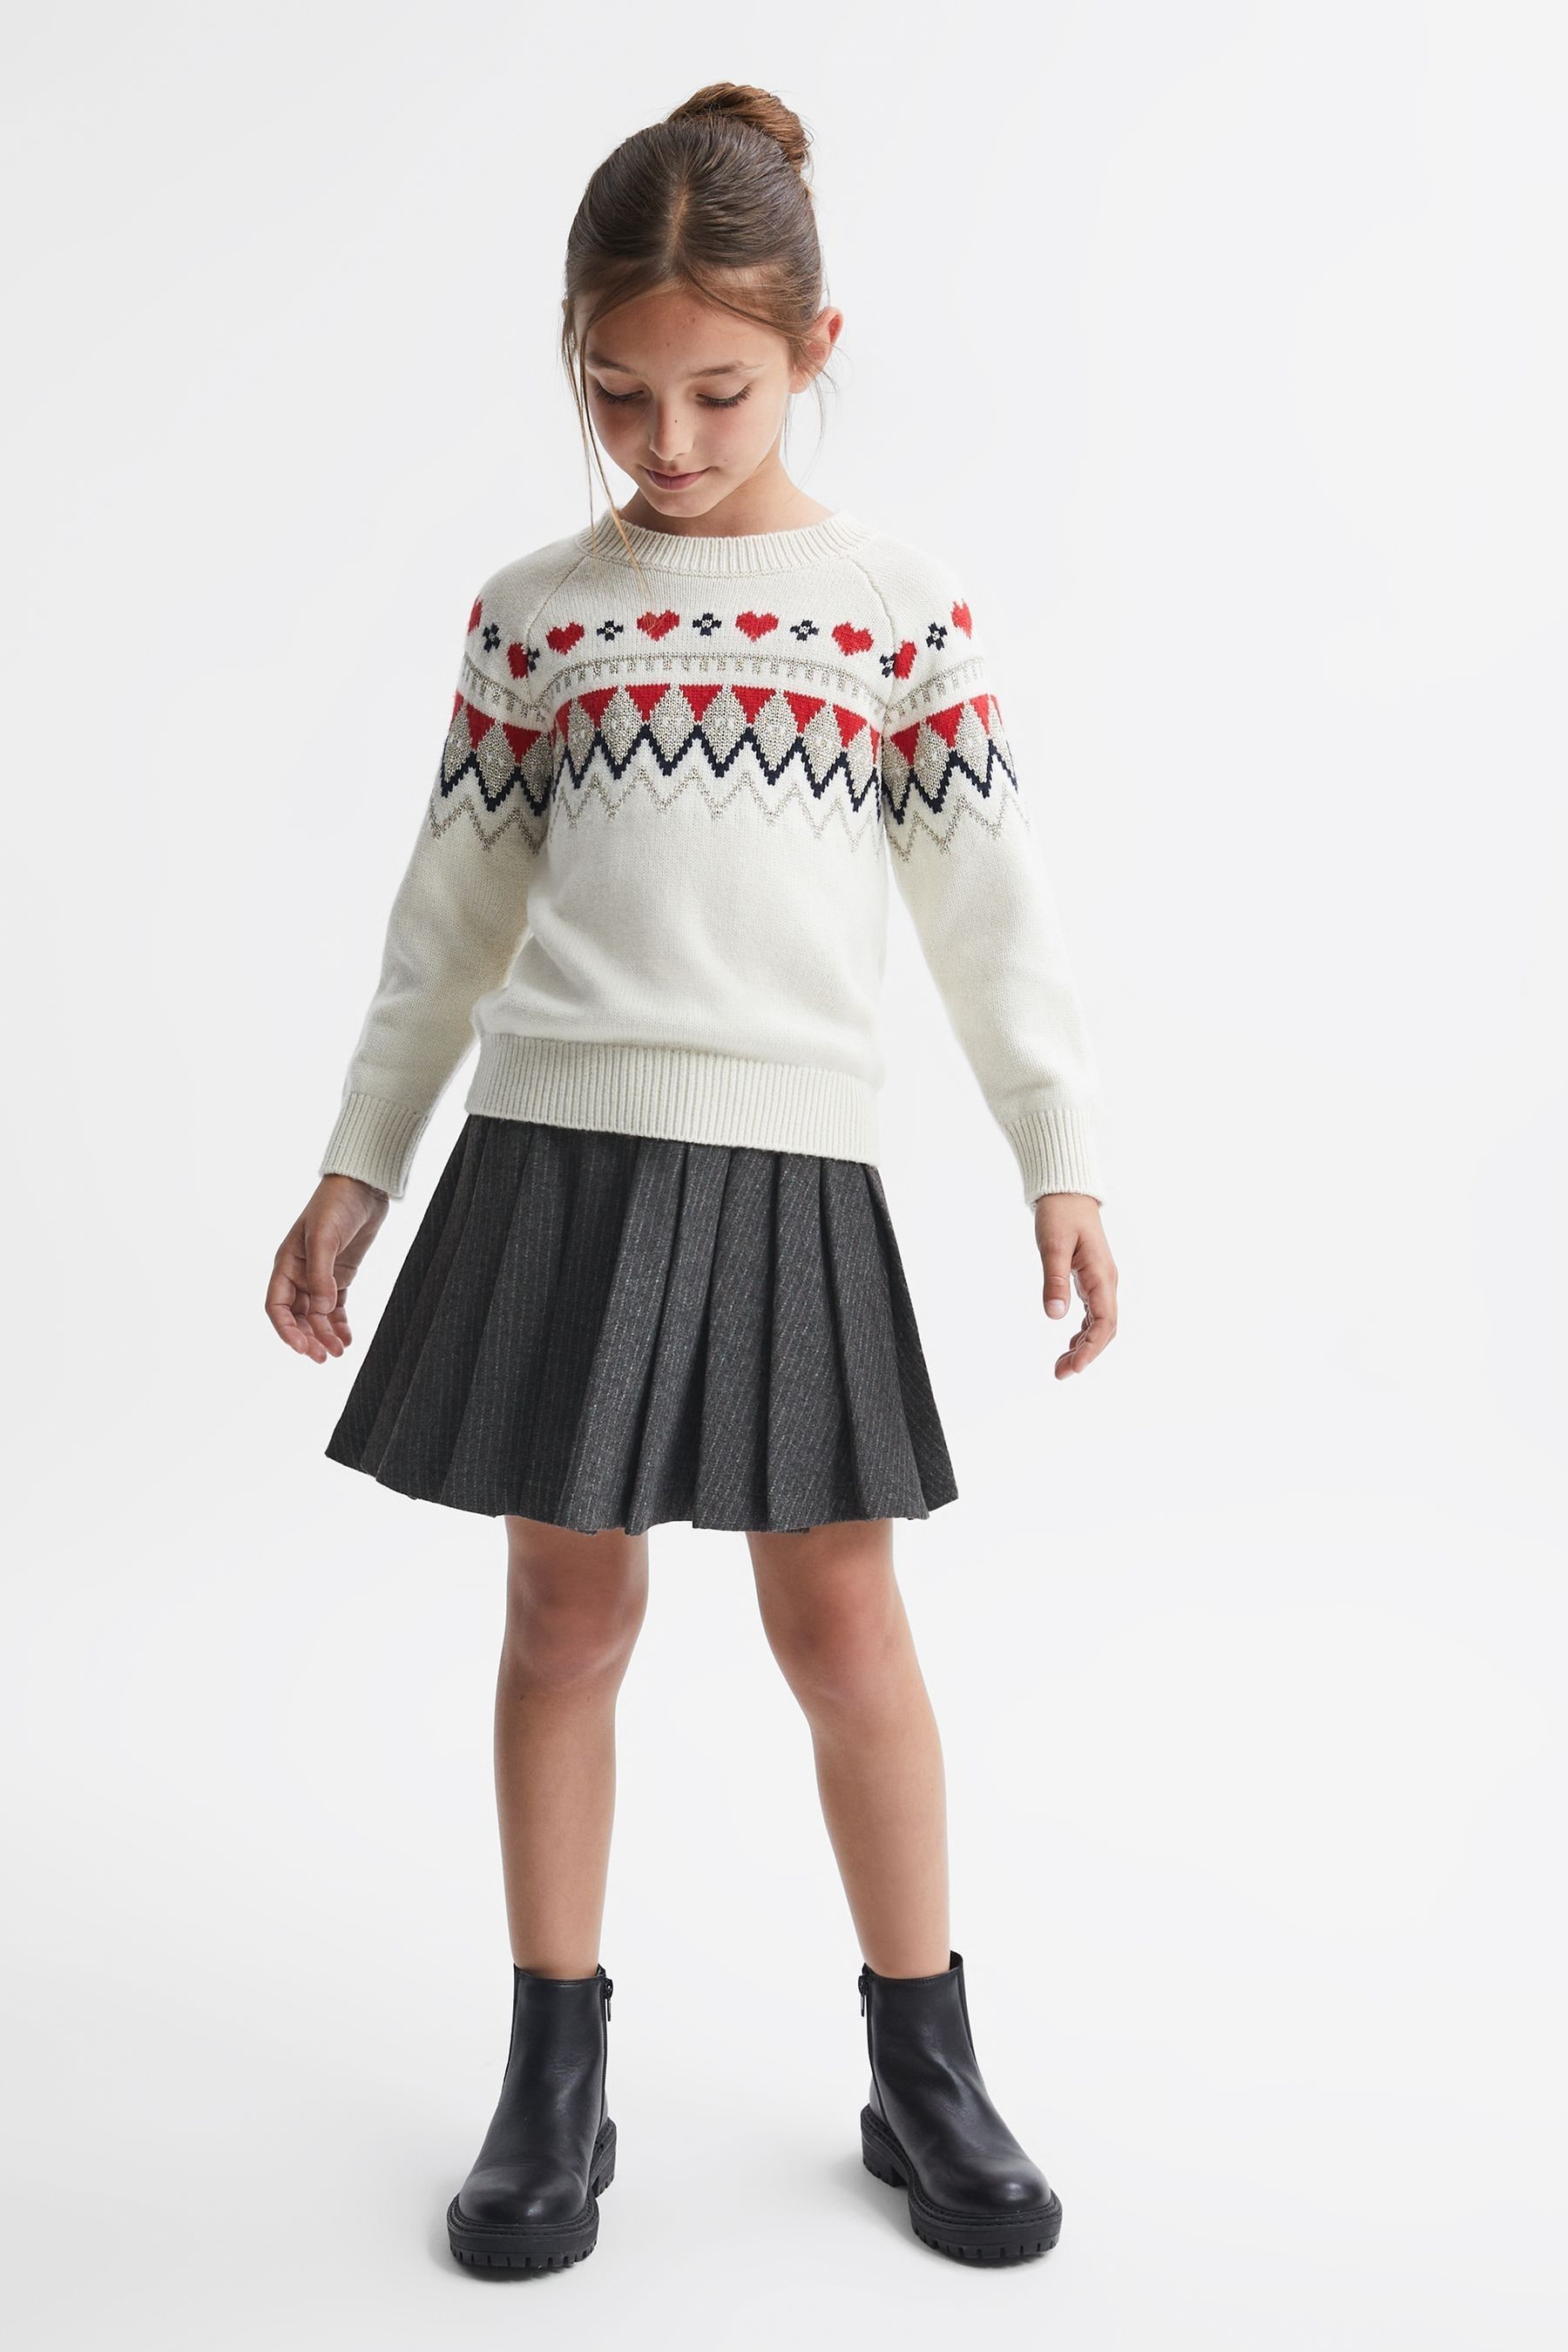 Reiss Kids' Marcie - Dark Grey Senior Wool Blend Striped Pleated Skirt, 9 - 10 Years